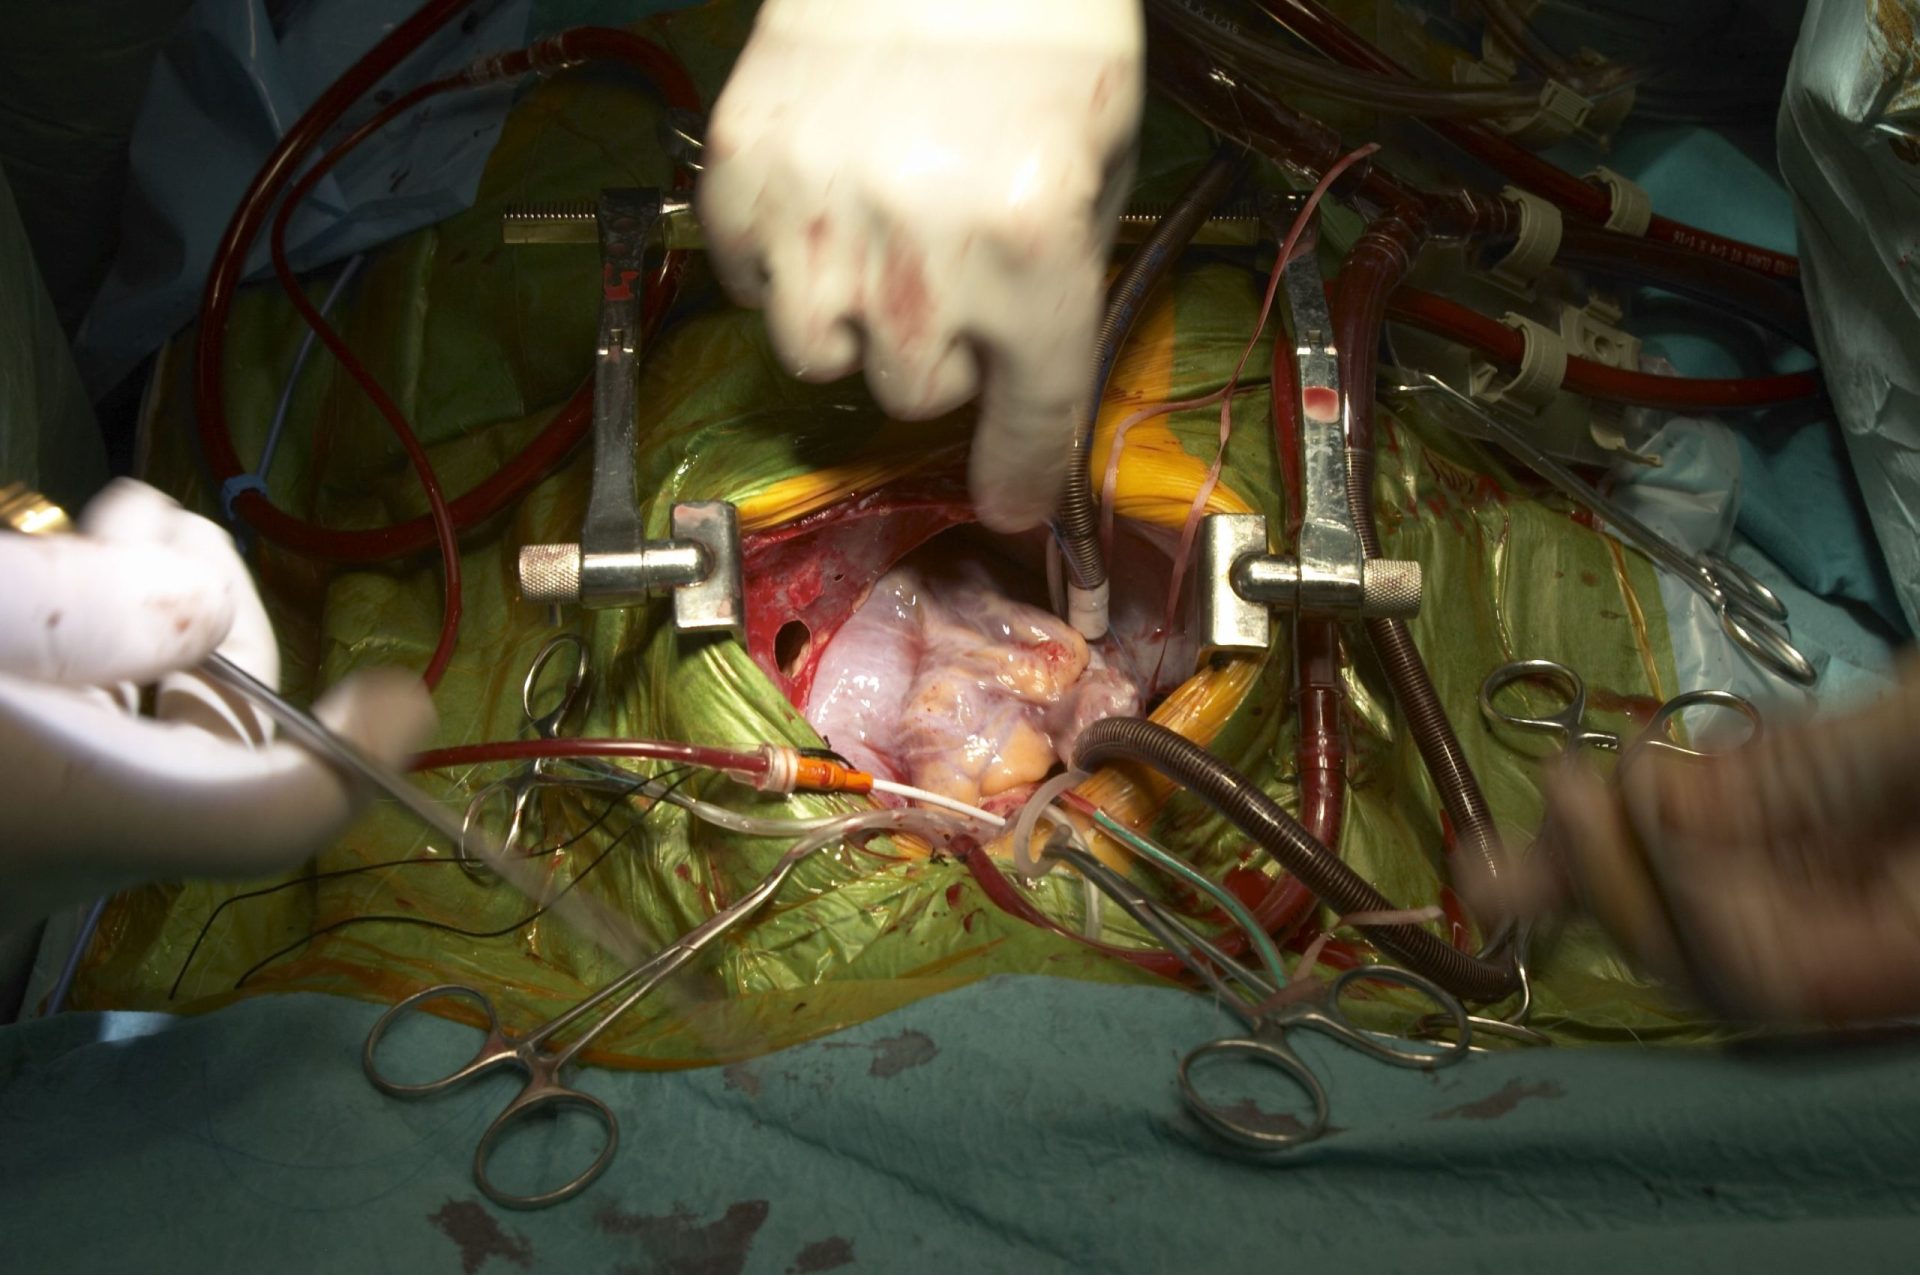 Órgãos de mulher transplantados transmitiram cancro aos recetores